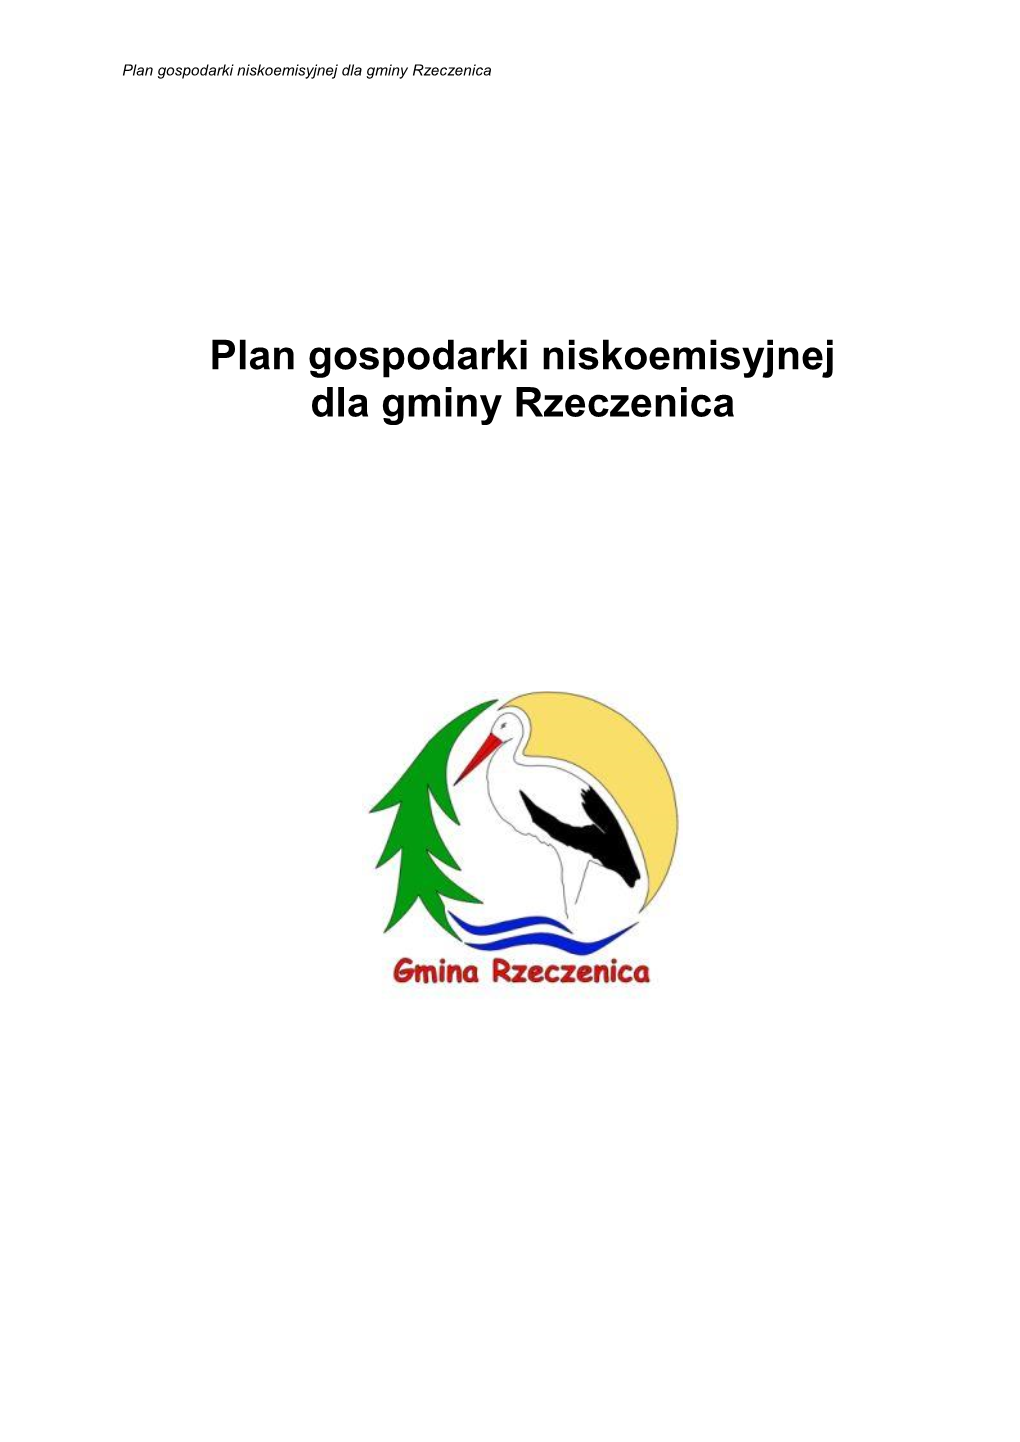 Plan Gospodarki Niskoemisyjnej Dla Gminy Rzeczenica